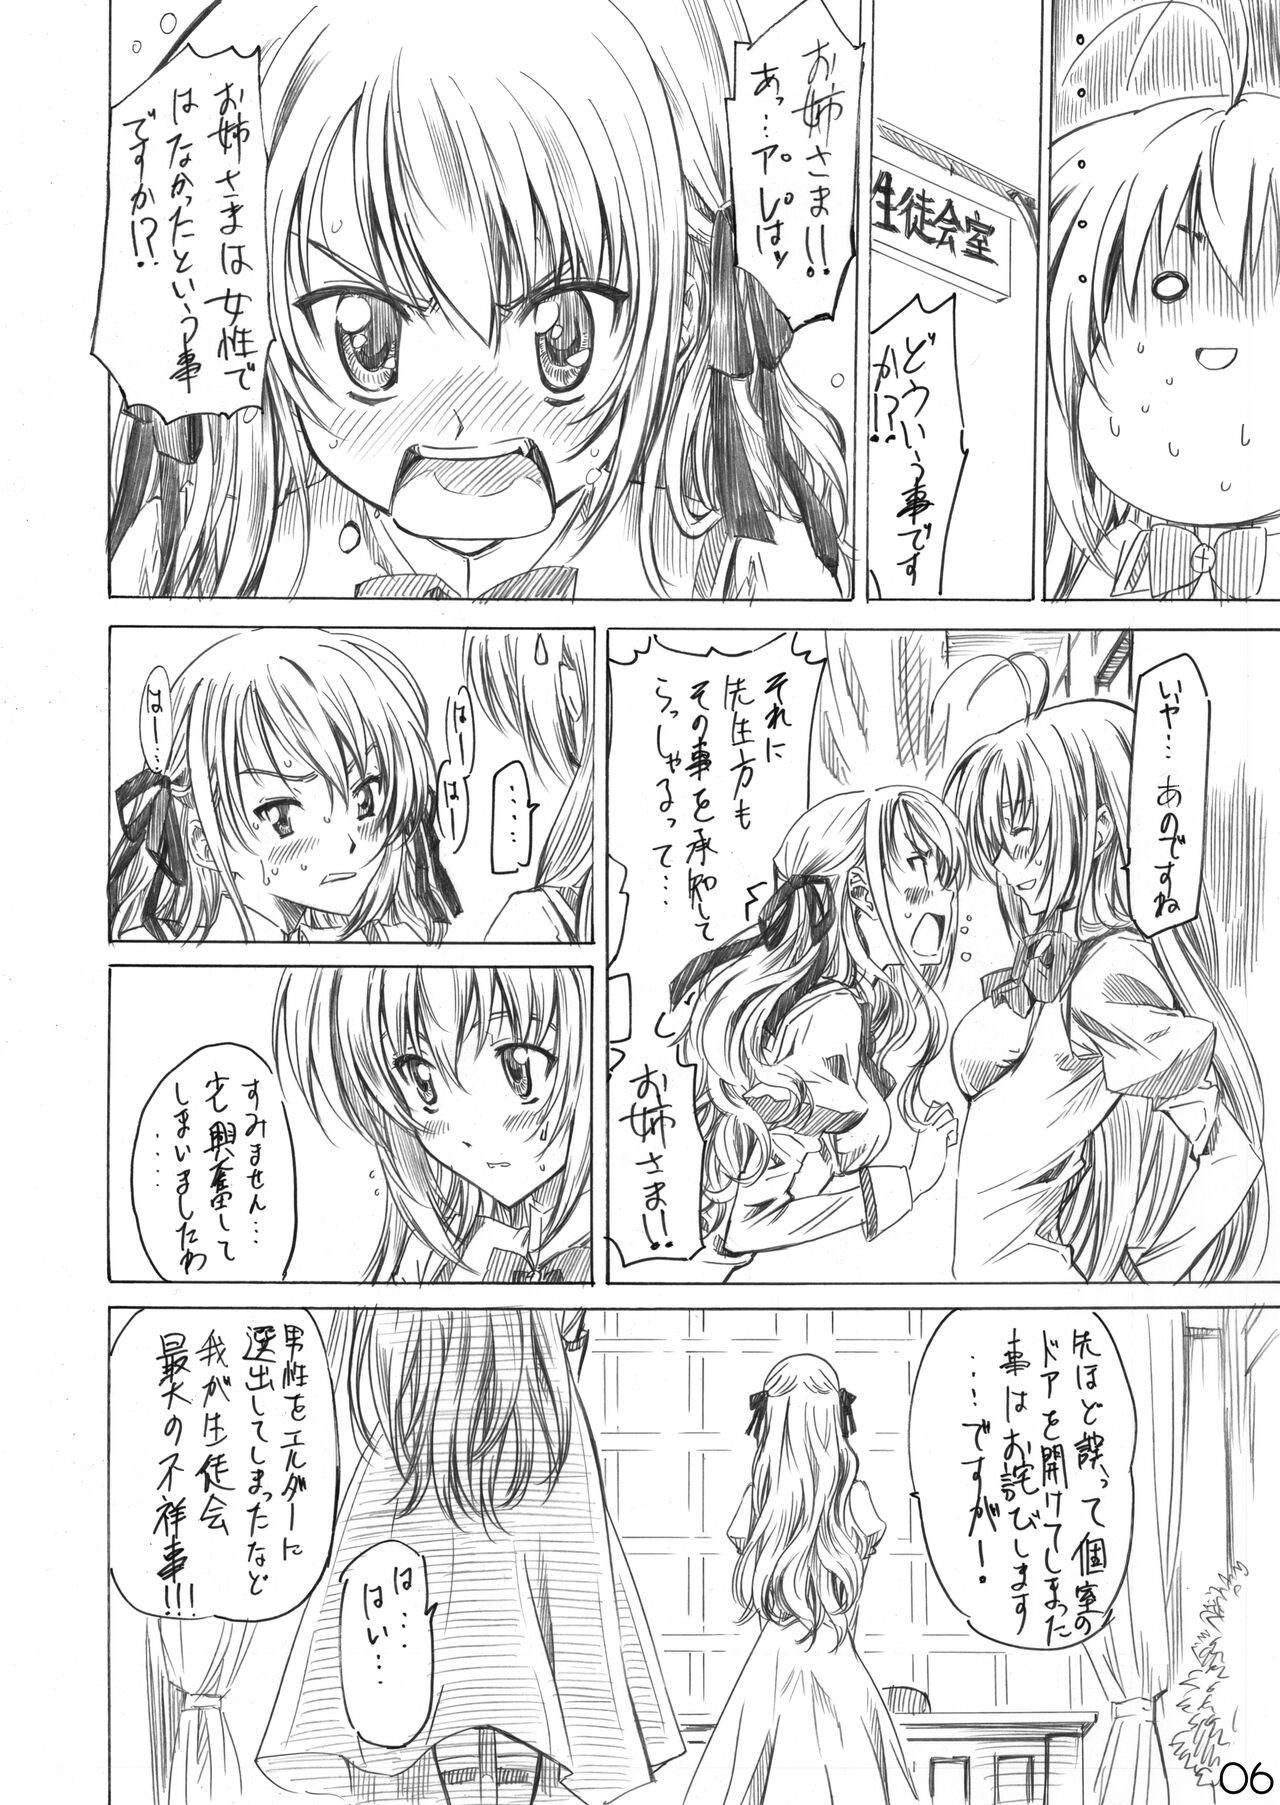 Licking Otome wa Boku de Nani Shiteru - Otome wa boku ni koishiteru Arabic - Page 4